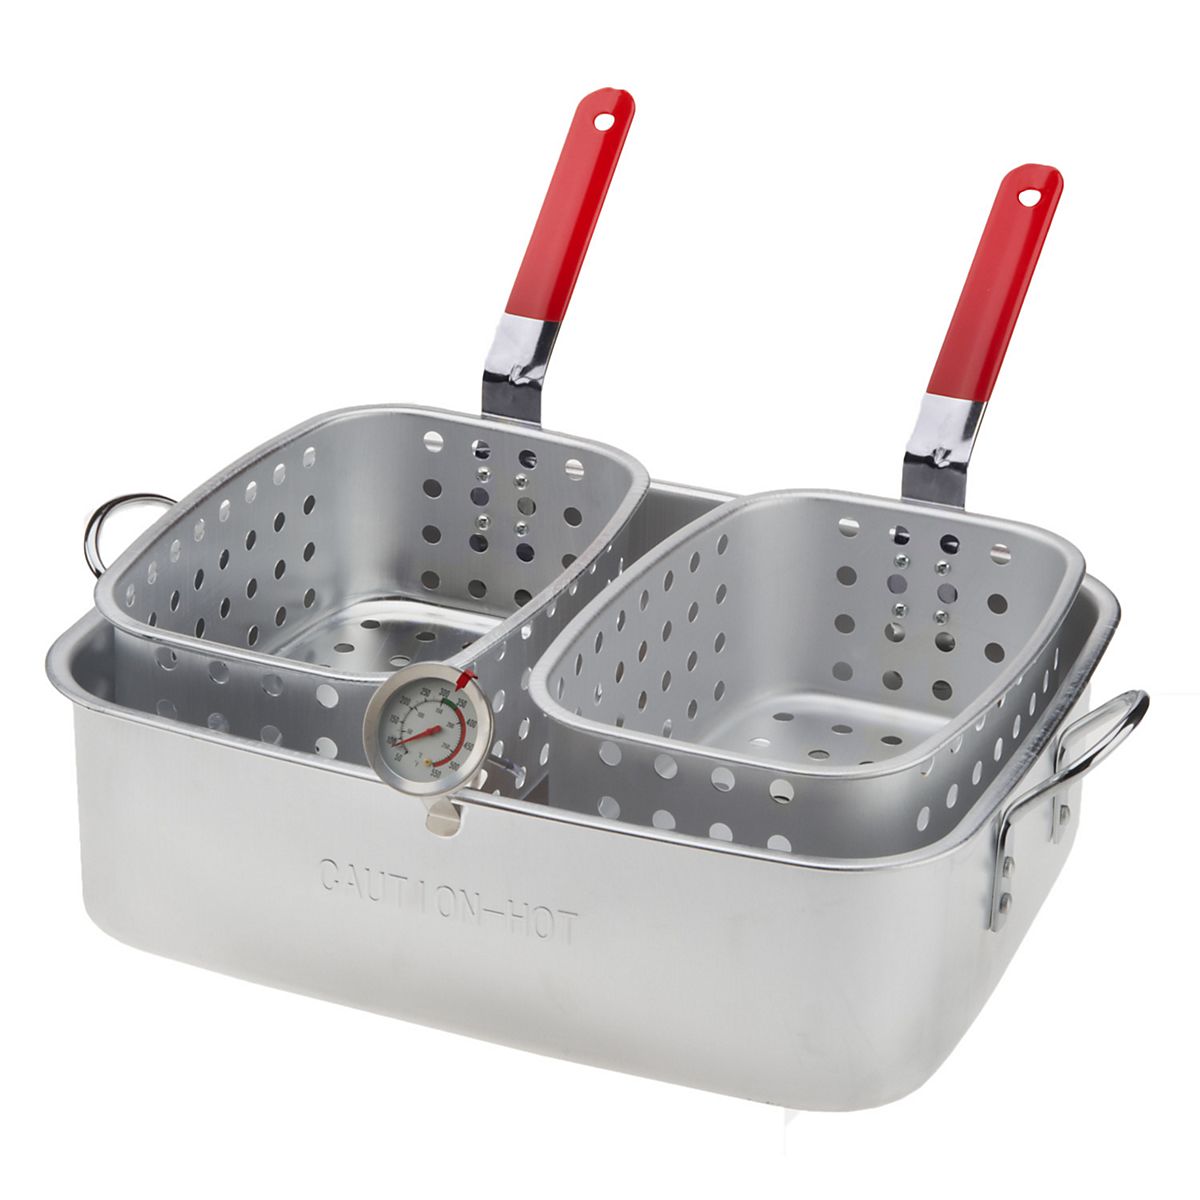 Buy Deep Fryer Pan With Basket online